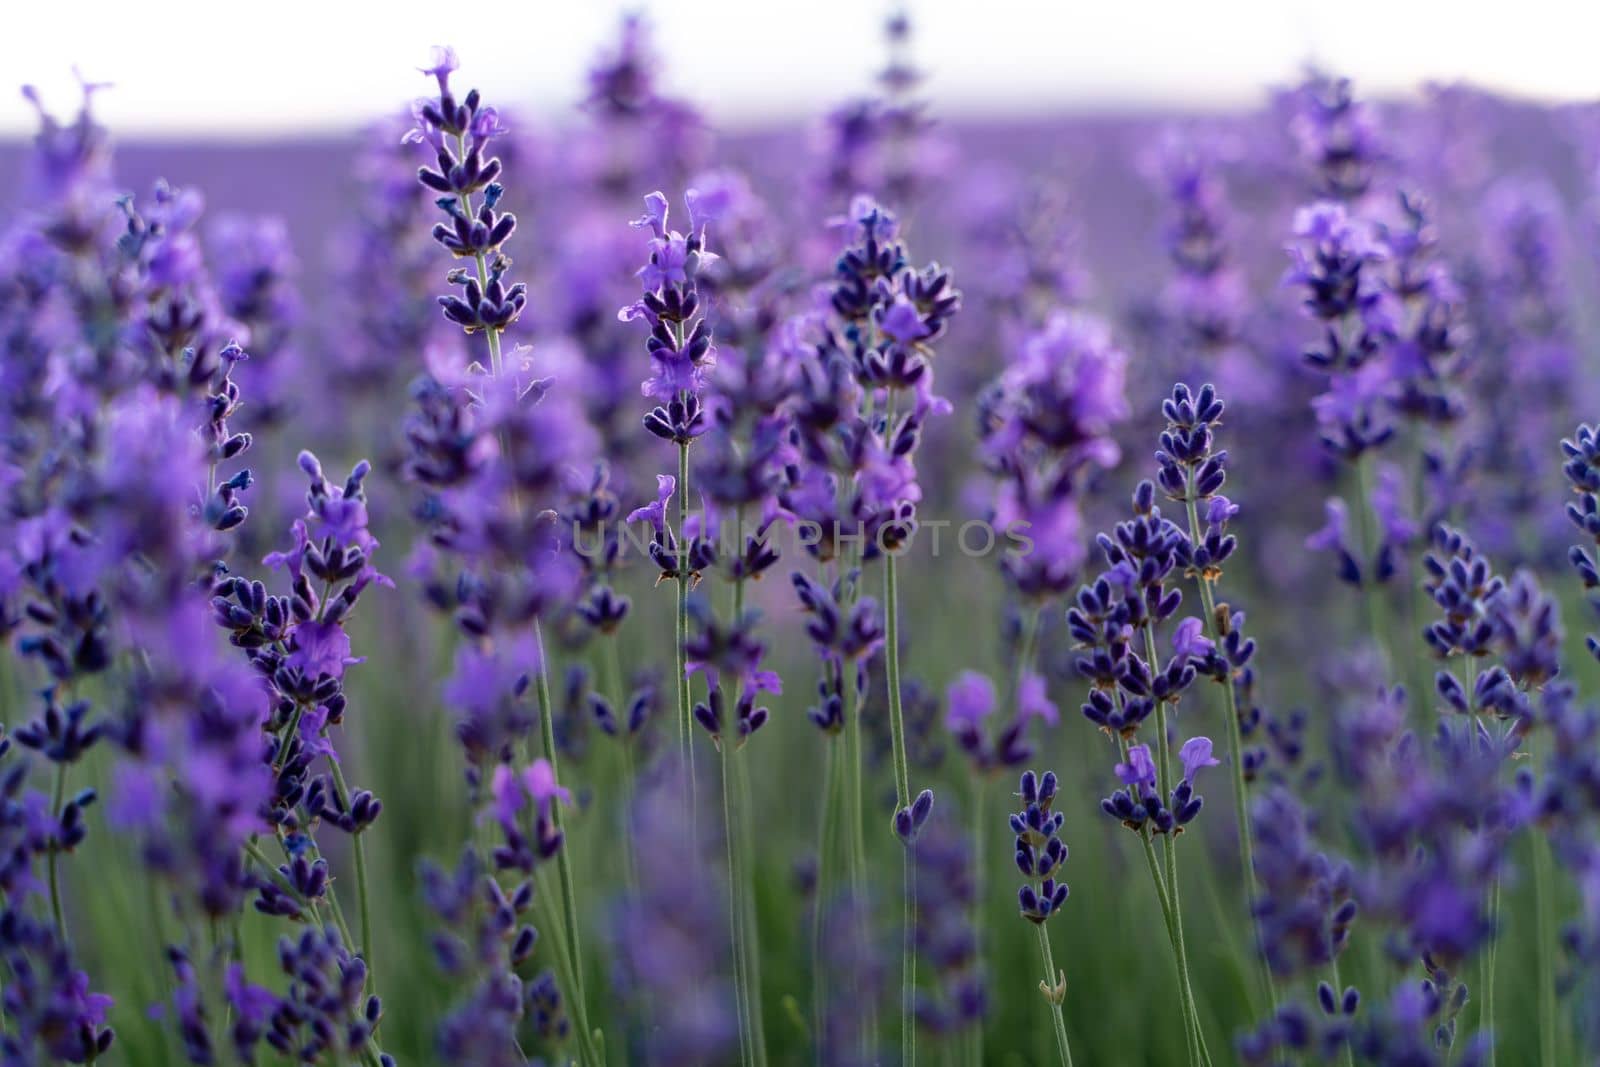 Lavender flower field, Blooming purple fragrant lavender flowers. Growing lavender swaying in the wind, harvesting, perfume ingredient, aromatherapy.